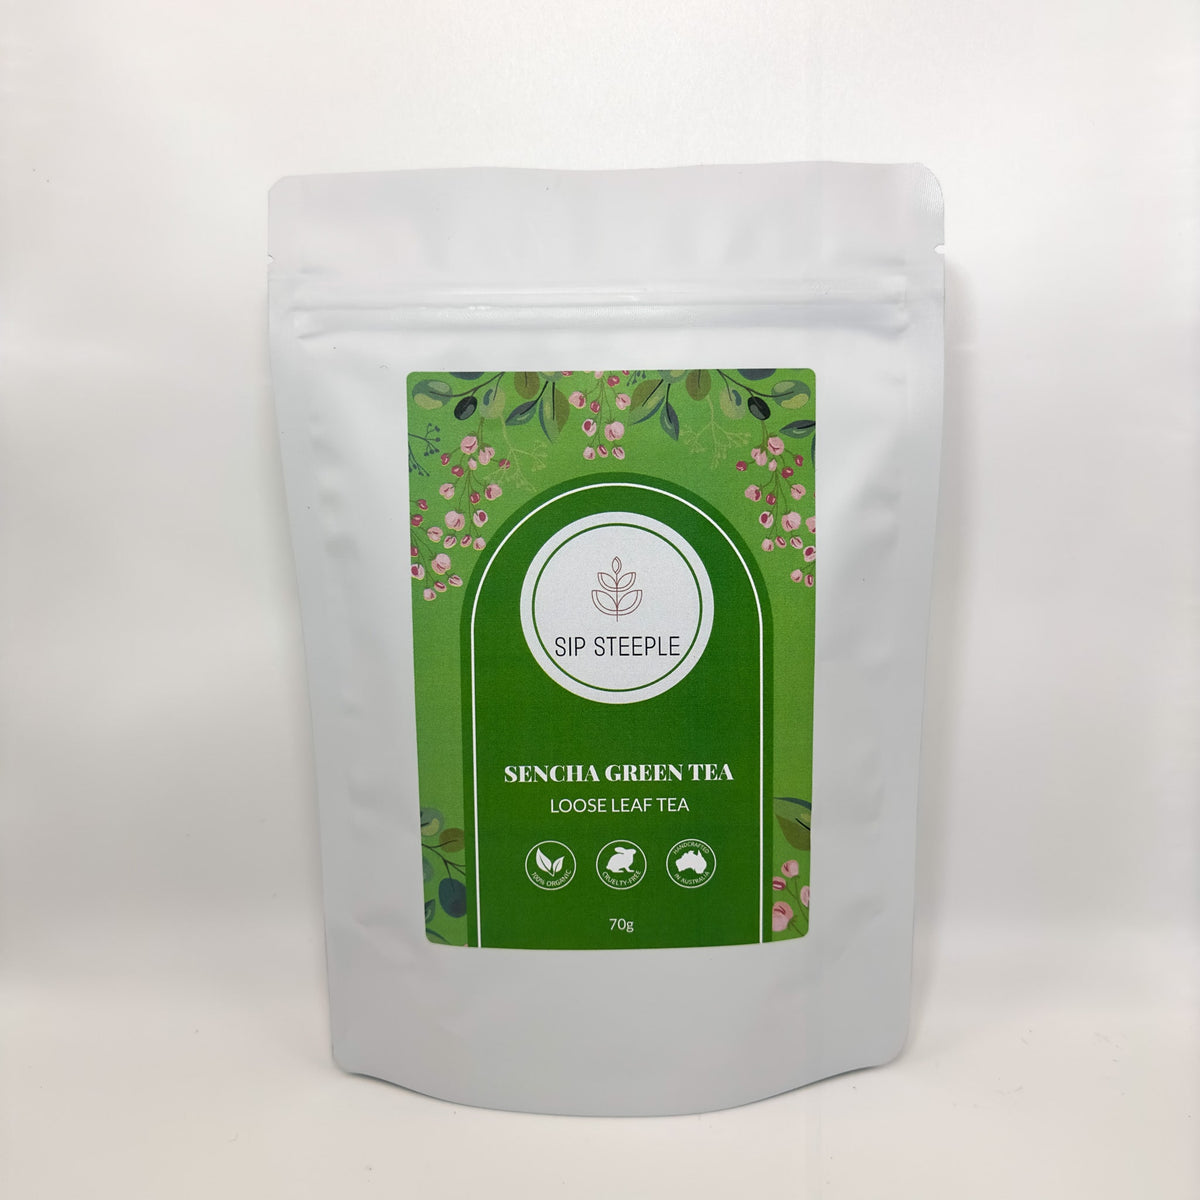 Sip Steeple Sencha Green Tea Packaging